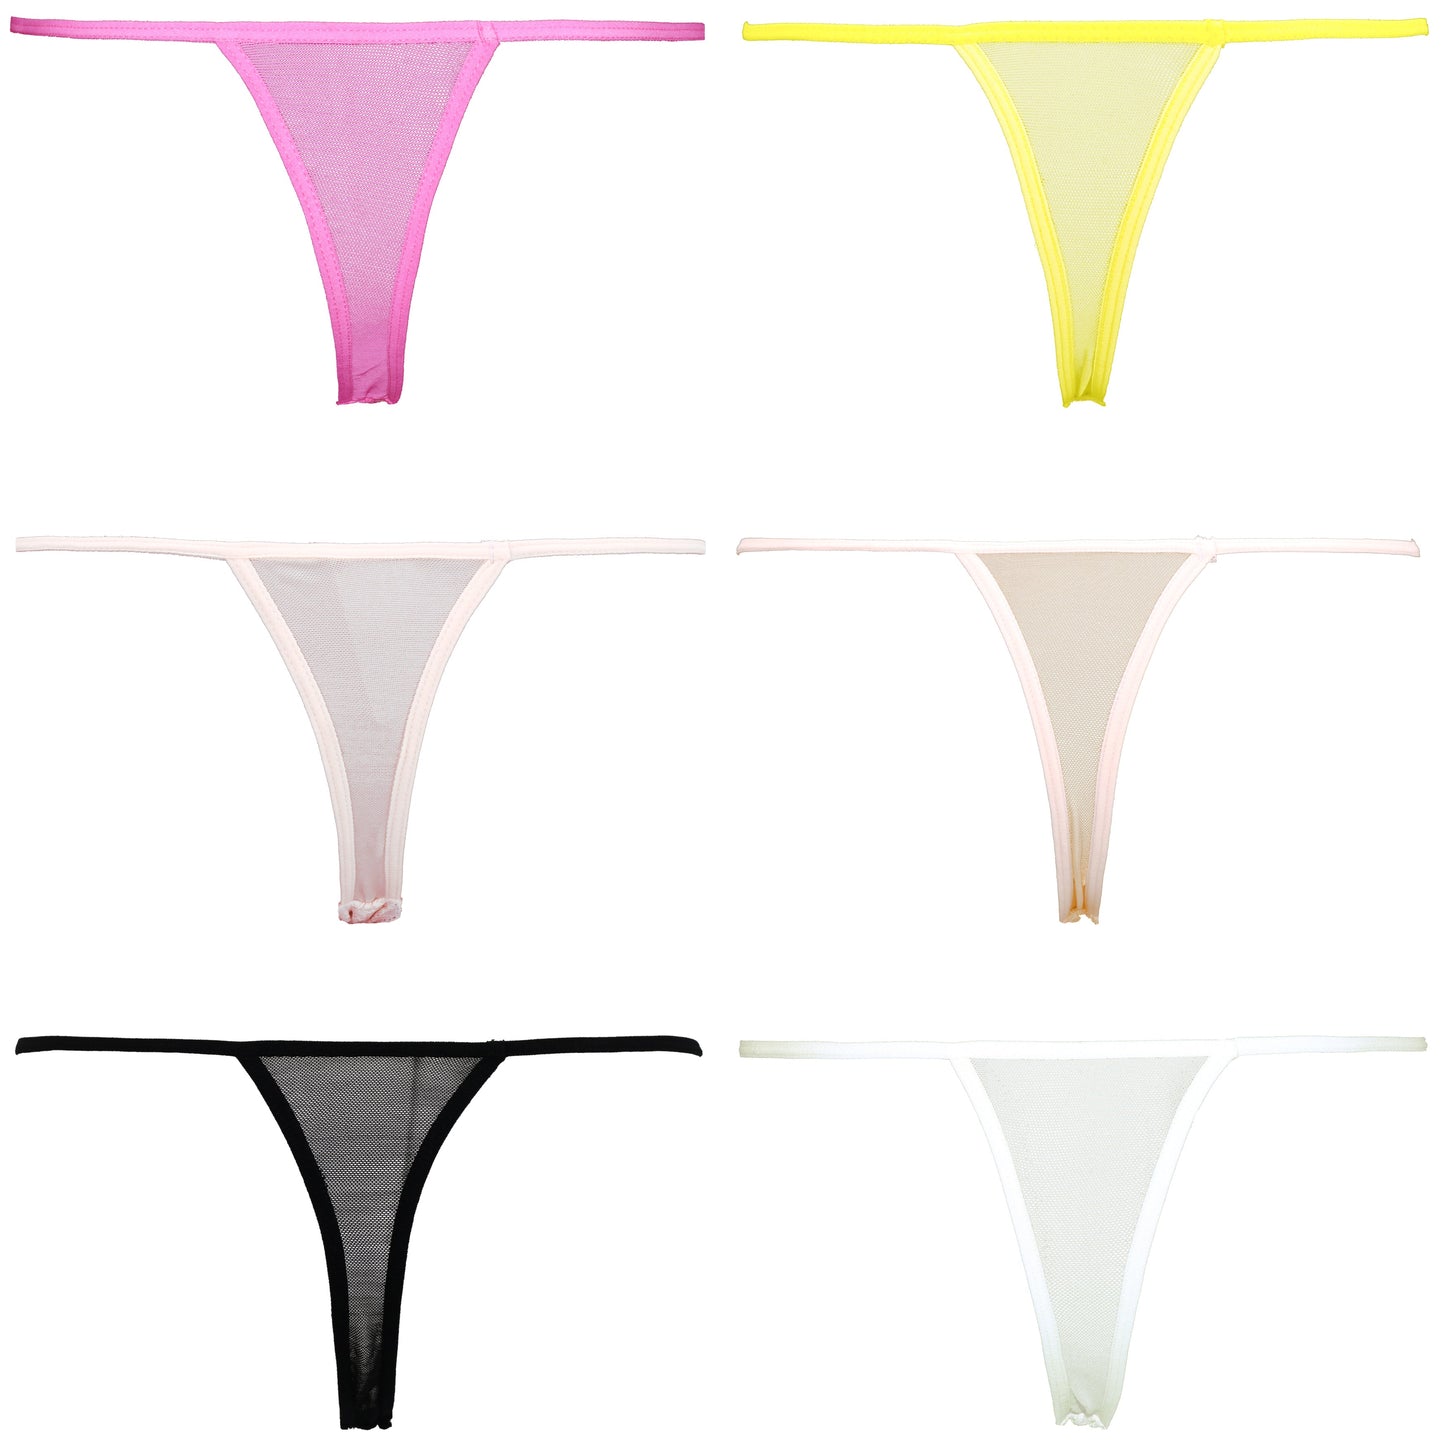 Soft G-strings Women's Panties Simple Lightweight Thongs